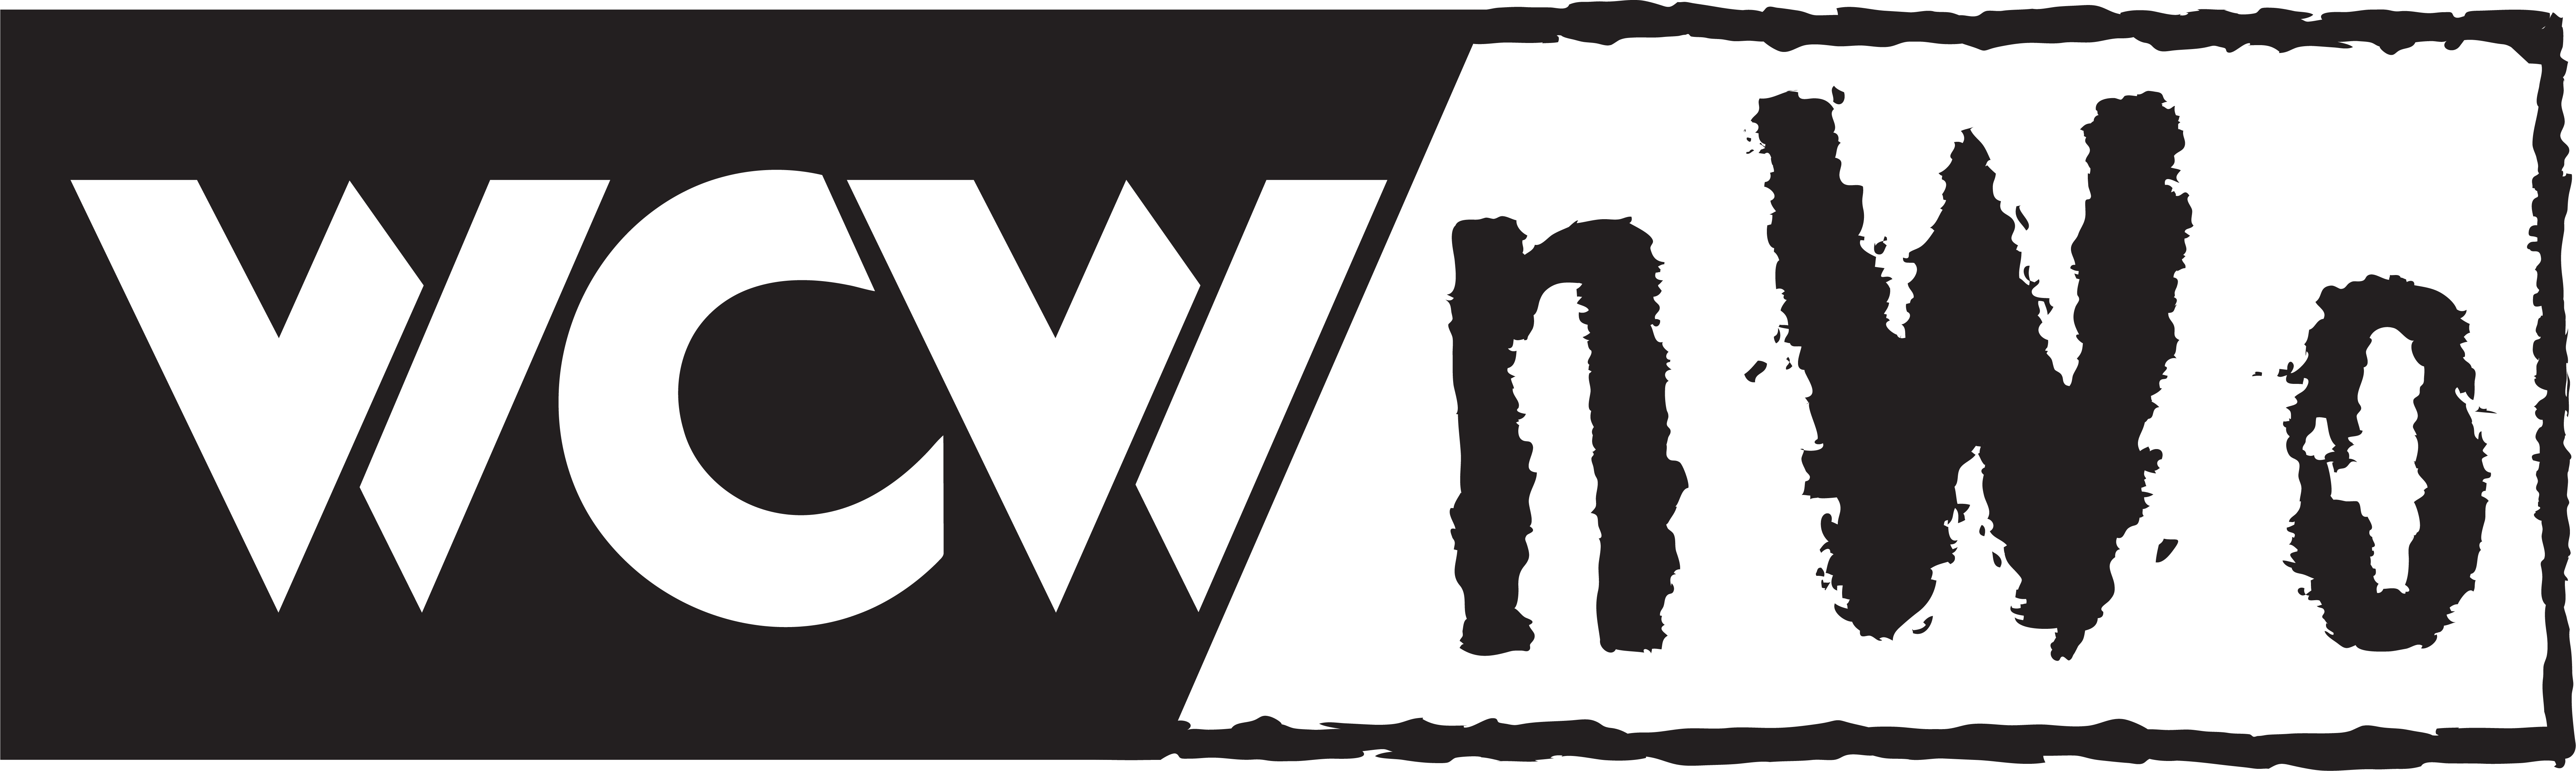 Wcw Nwo Logo By B1uechr1s